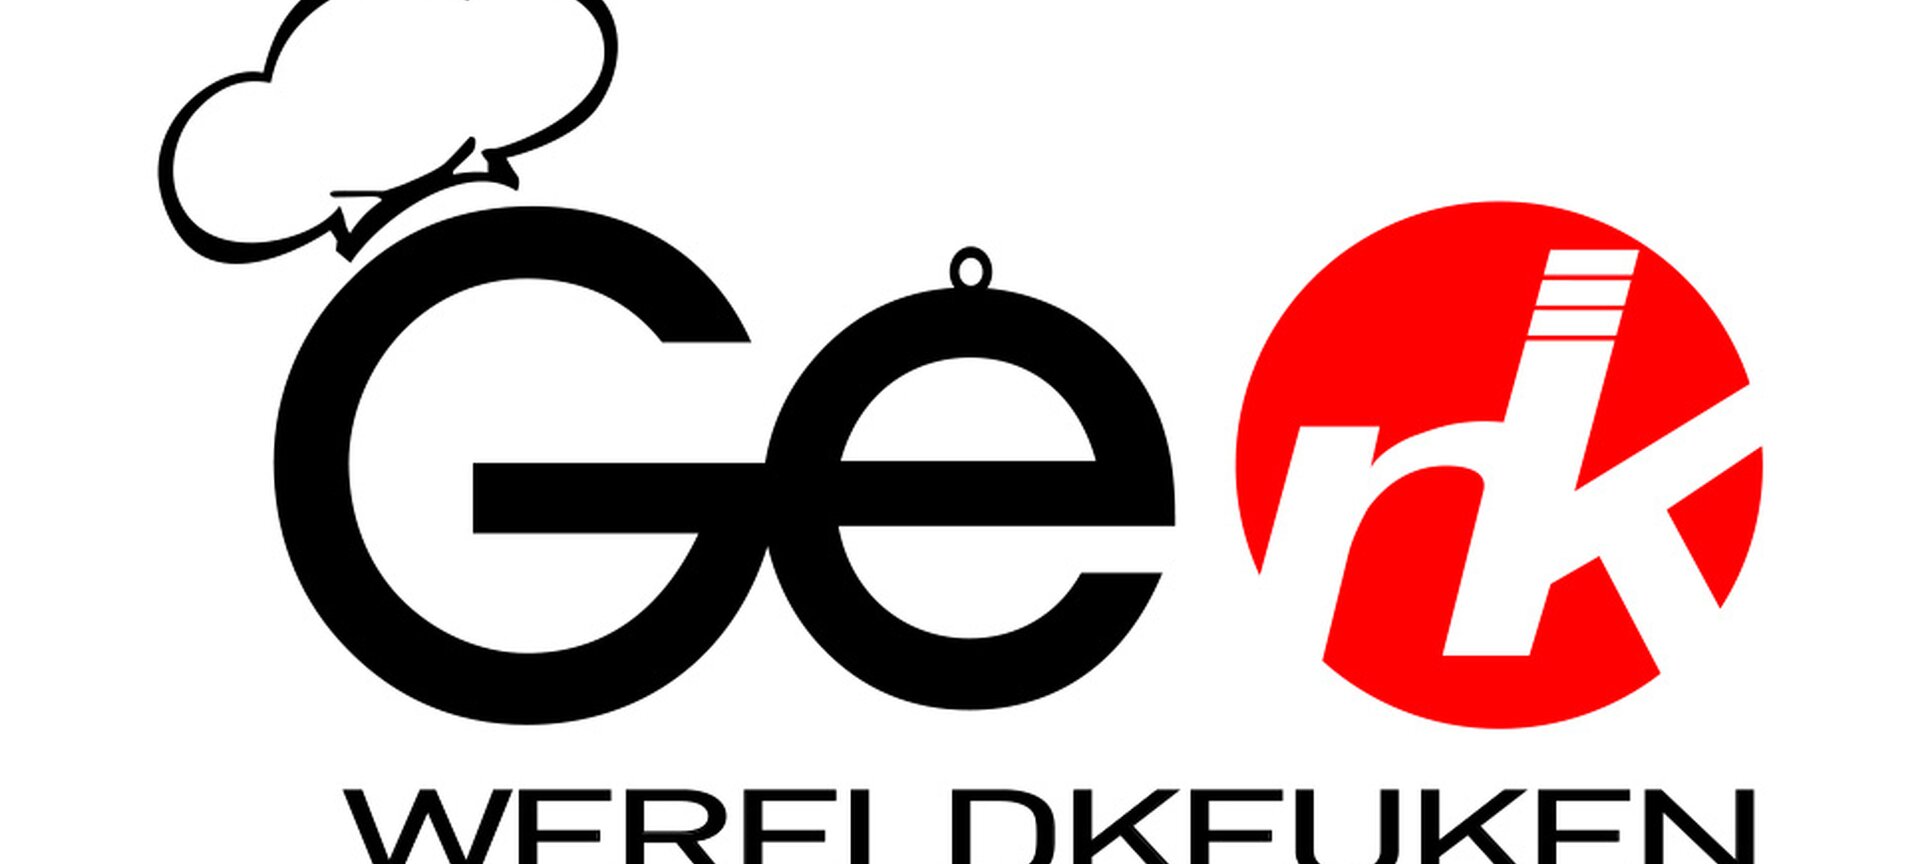 Wereldkeuken Genk - ons logo